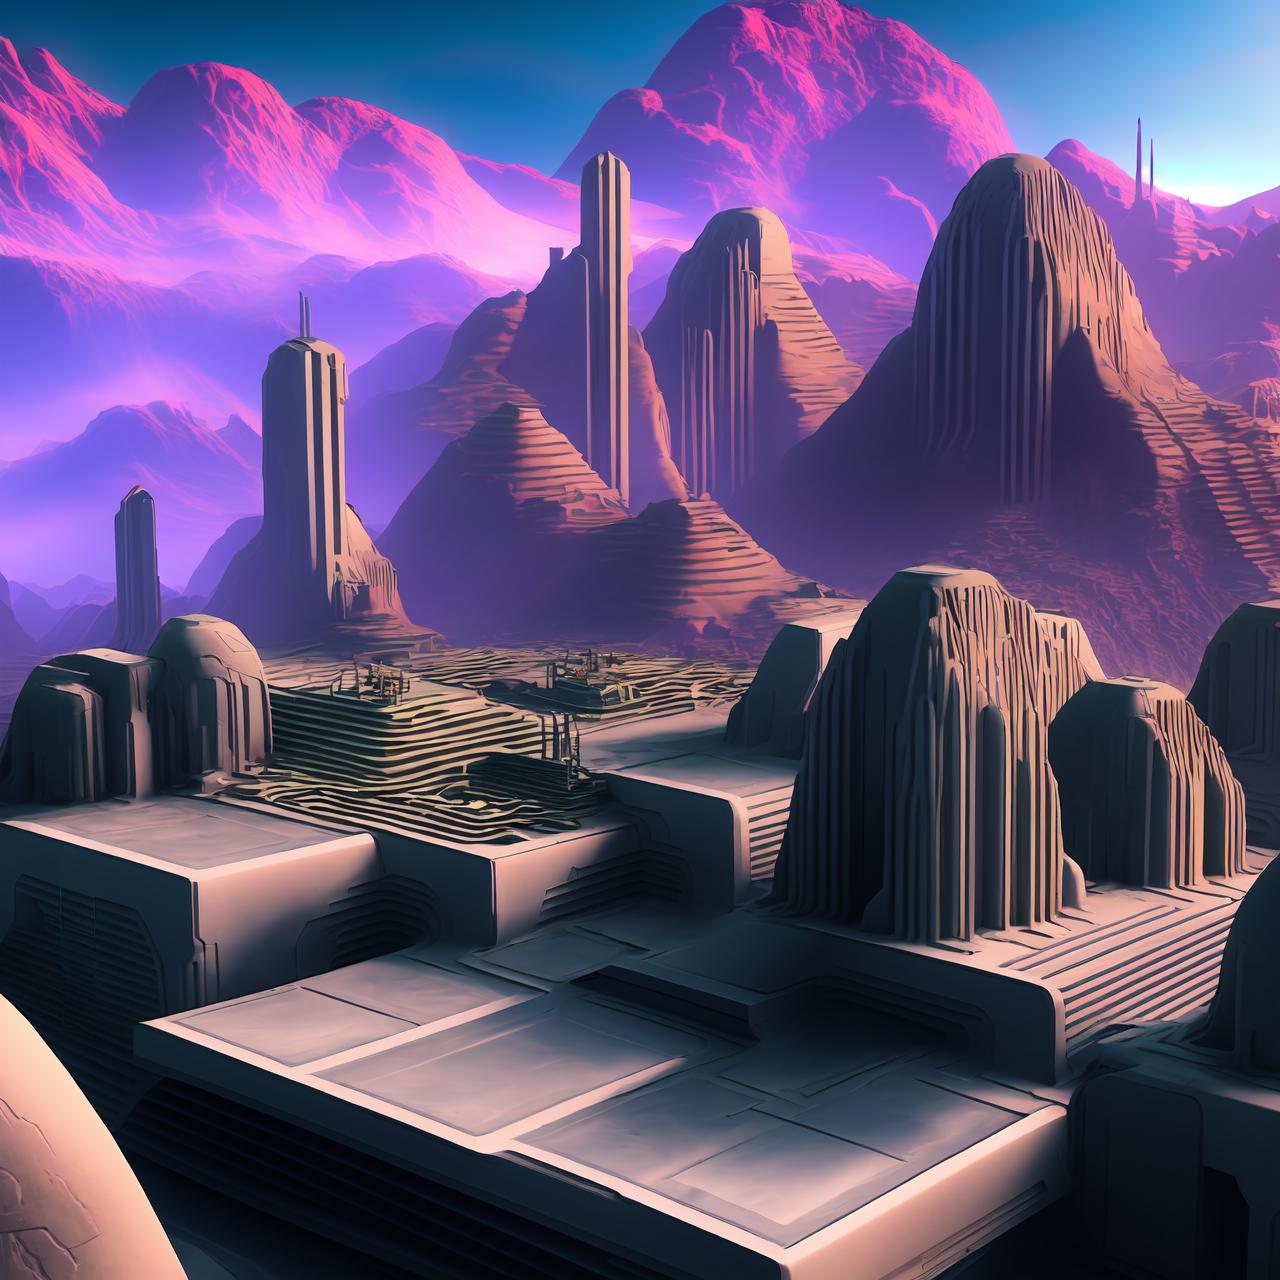 djz Alien Temple [ LORA ] image by driftjohnson